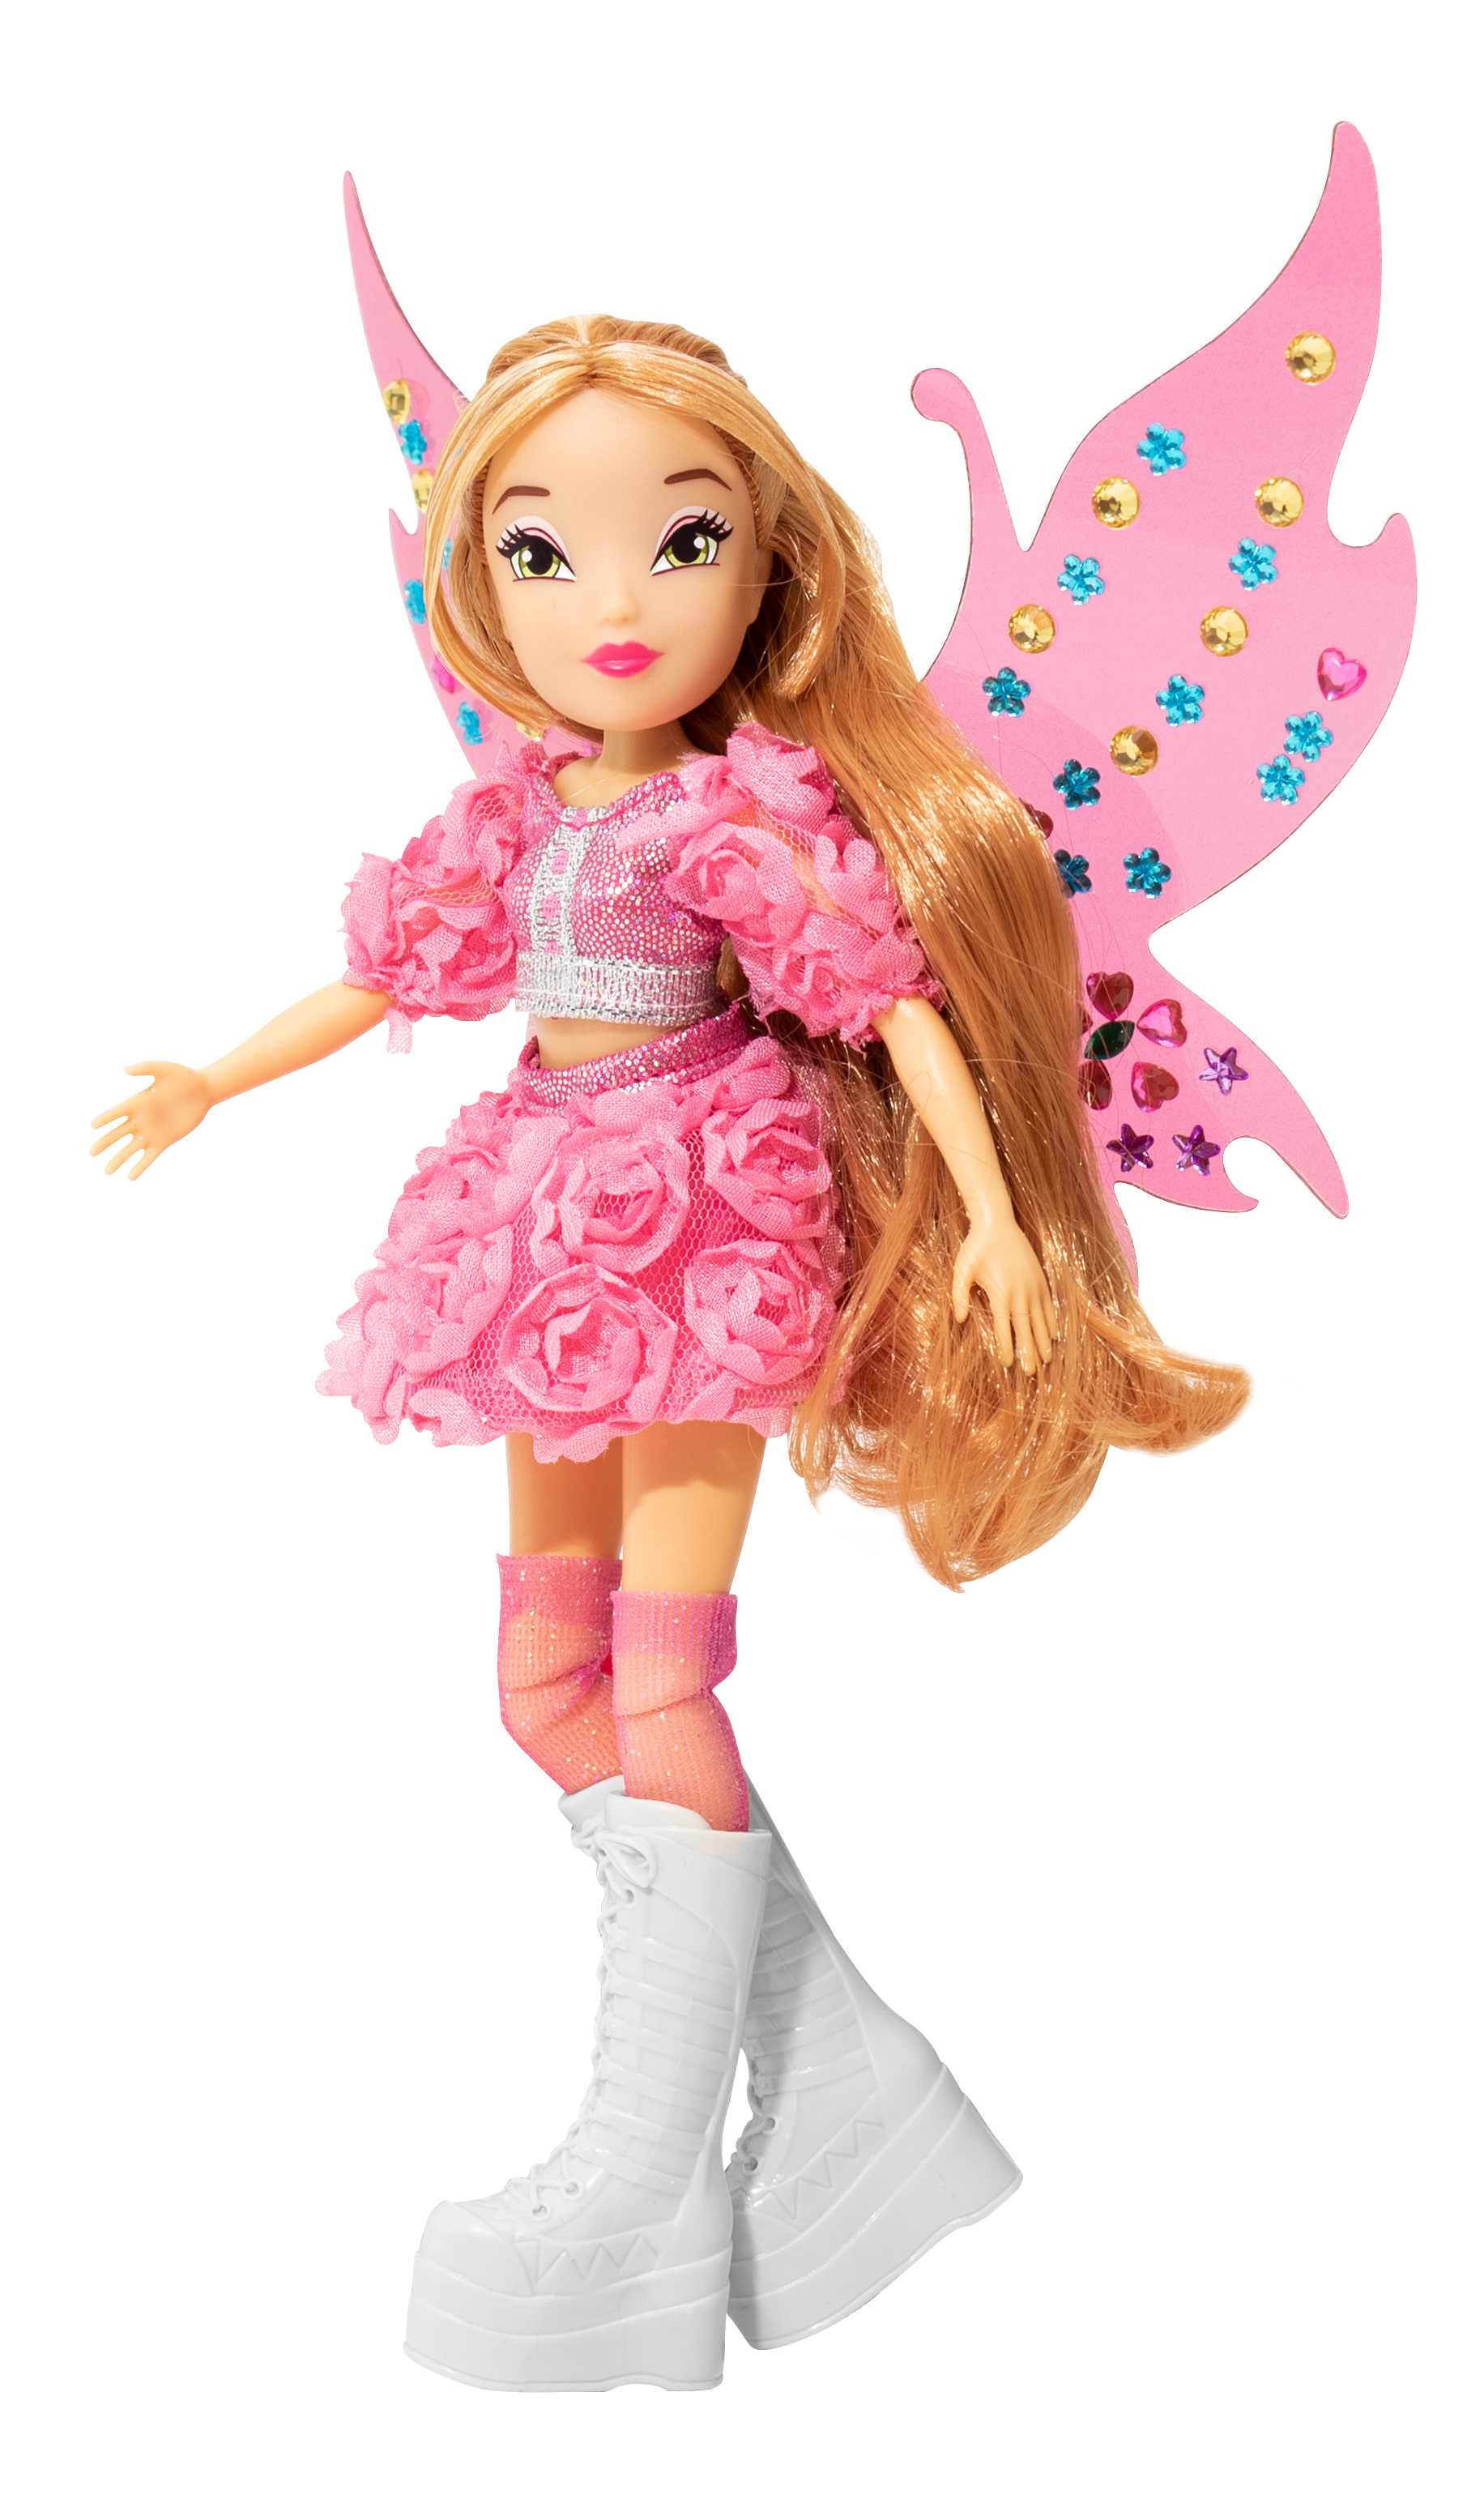 Winx doll - bambola bling the wings personaggio flora alta cm 23 - WINX